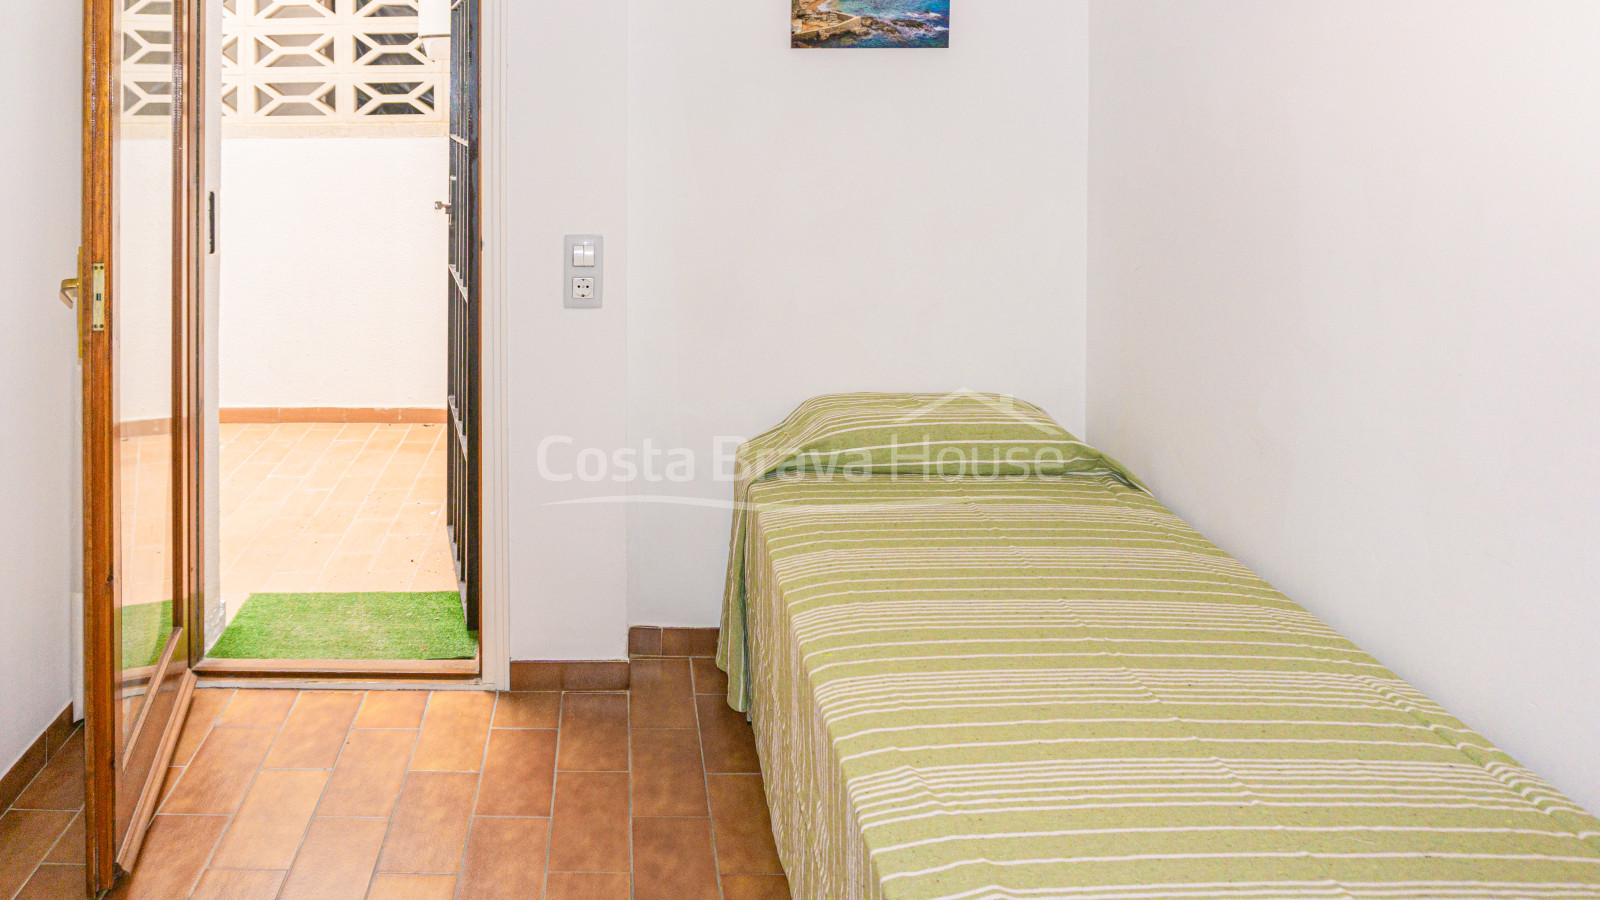 Apartamento en perfecto estado en venta en pleno centro de Calella, a dos minutos a pie de la playa